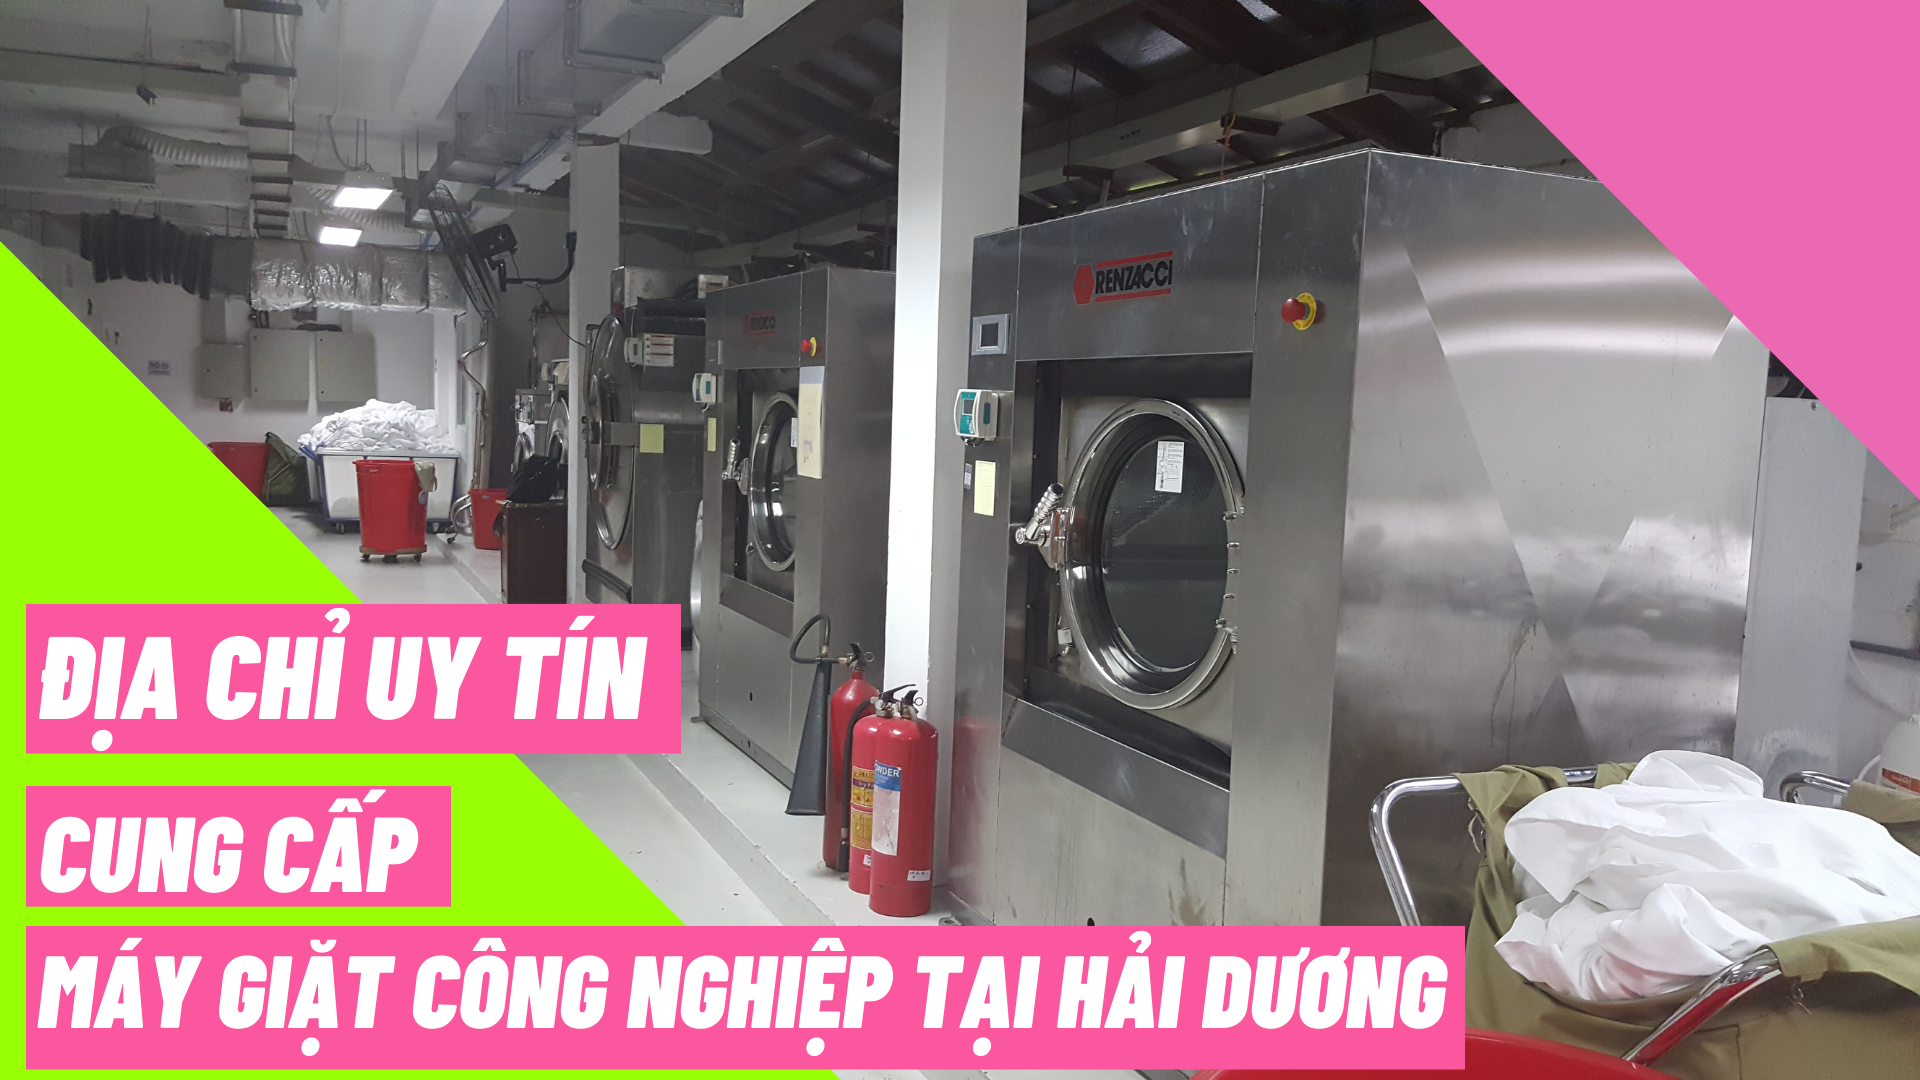 Địa chỉ uy tín cung cấp máy giặt công nghiệp tại Hải Dương